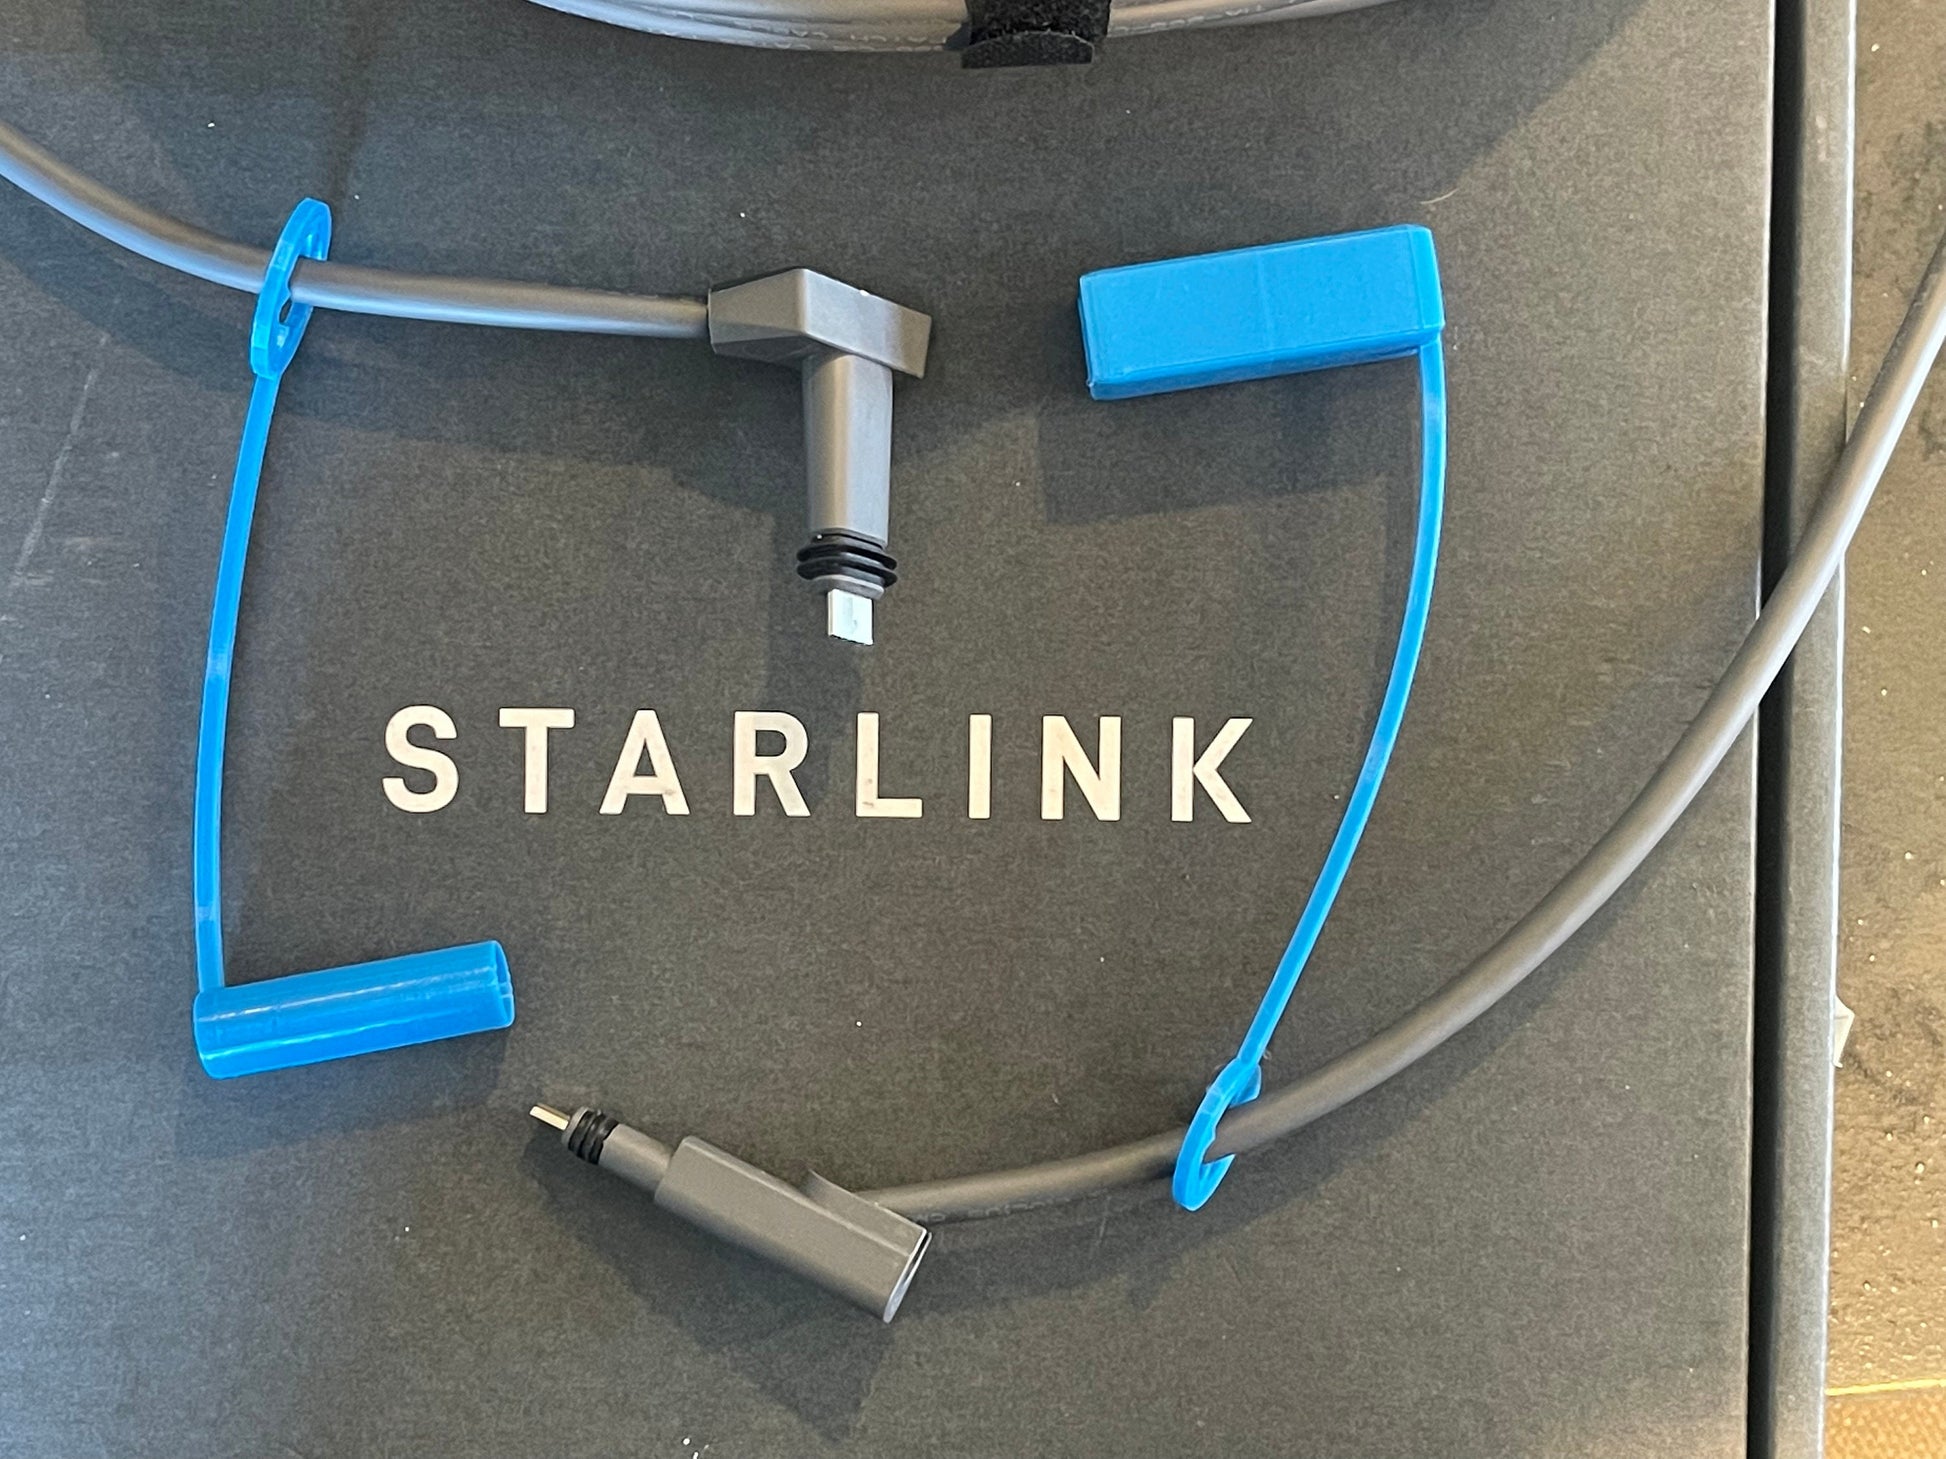 Acheter Protecteur de câble en caoutchouc pour câble Starlink, 4